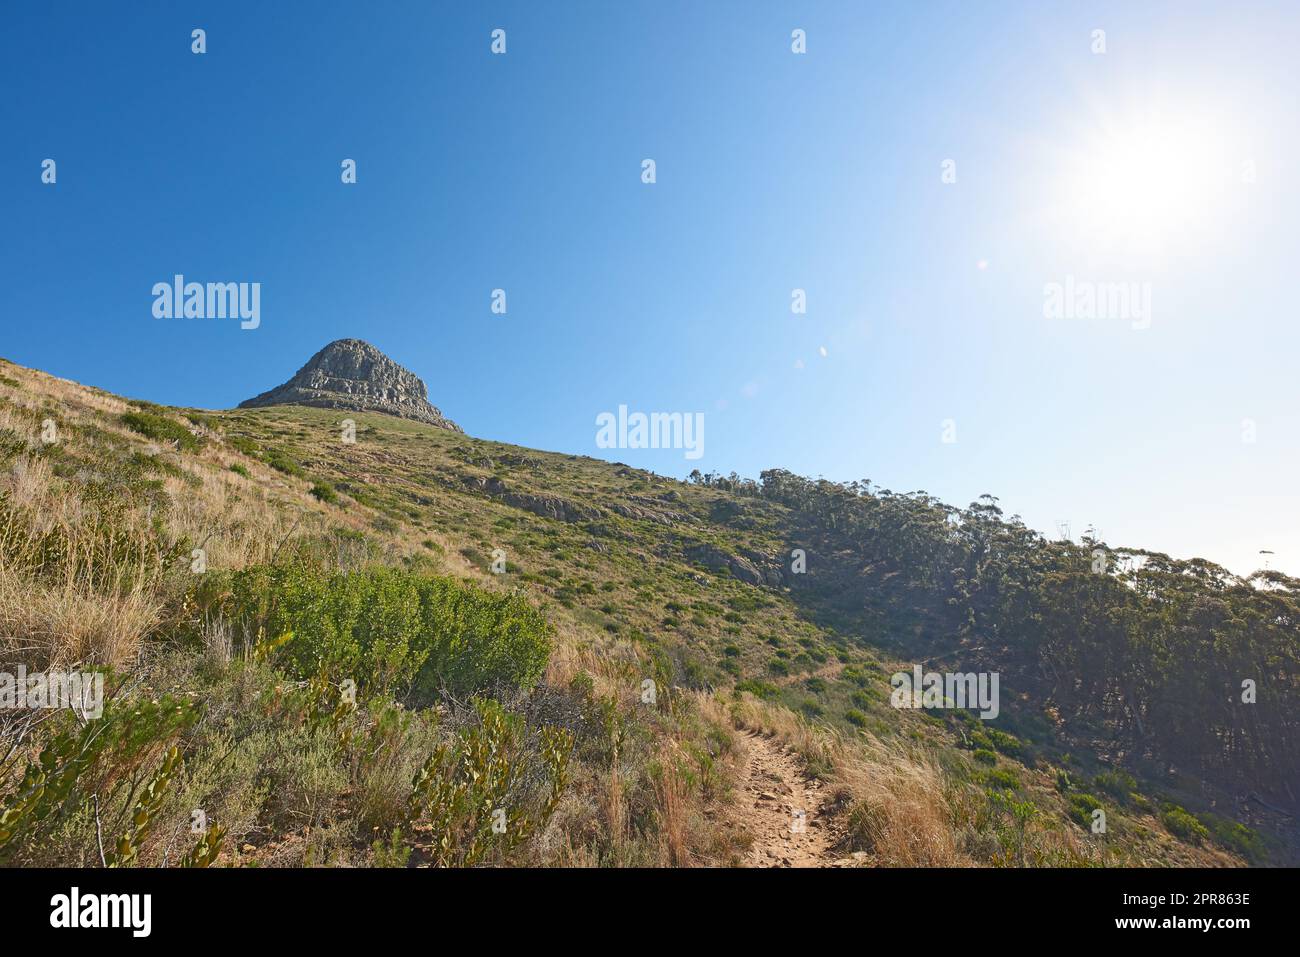 Vue sur le paysage de la montagne Lions Head, ciel bleu avec espace de copie sur Table Mountain, le Cap, Afrique du Sud. Calme, serein, tranquille, campagne et détente paysage de la nature. Destination touristique sauvage Banque D'Images